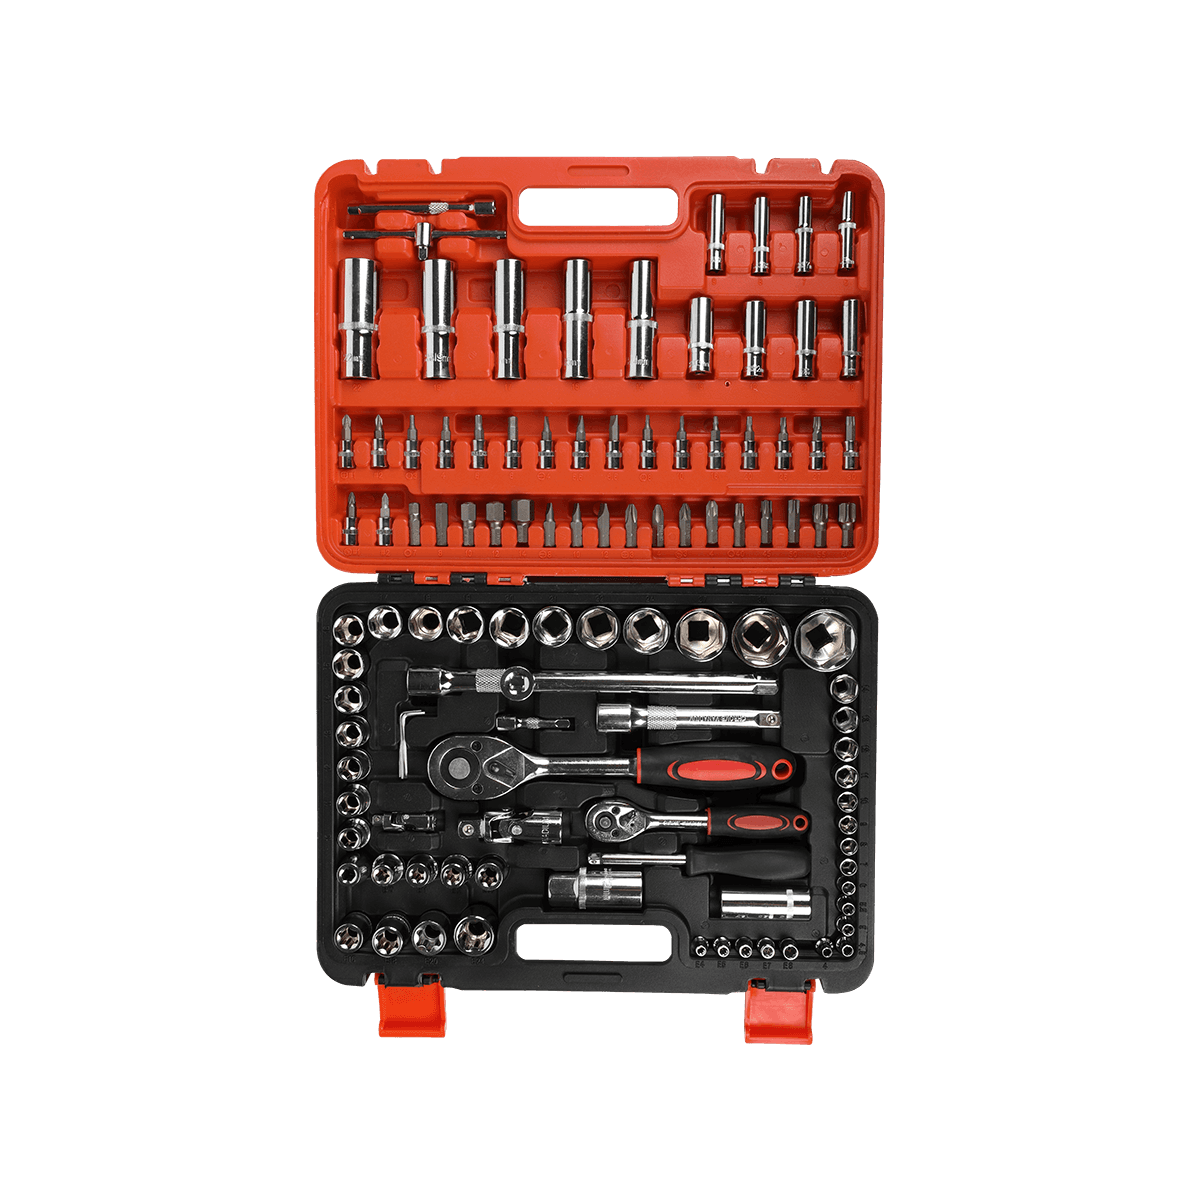 108 peças de fixadores de hardware para conserto de celular conjunto de ferramentas manuais conjuntos de ferramentas domésticas gerais